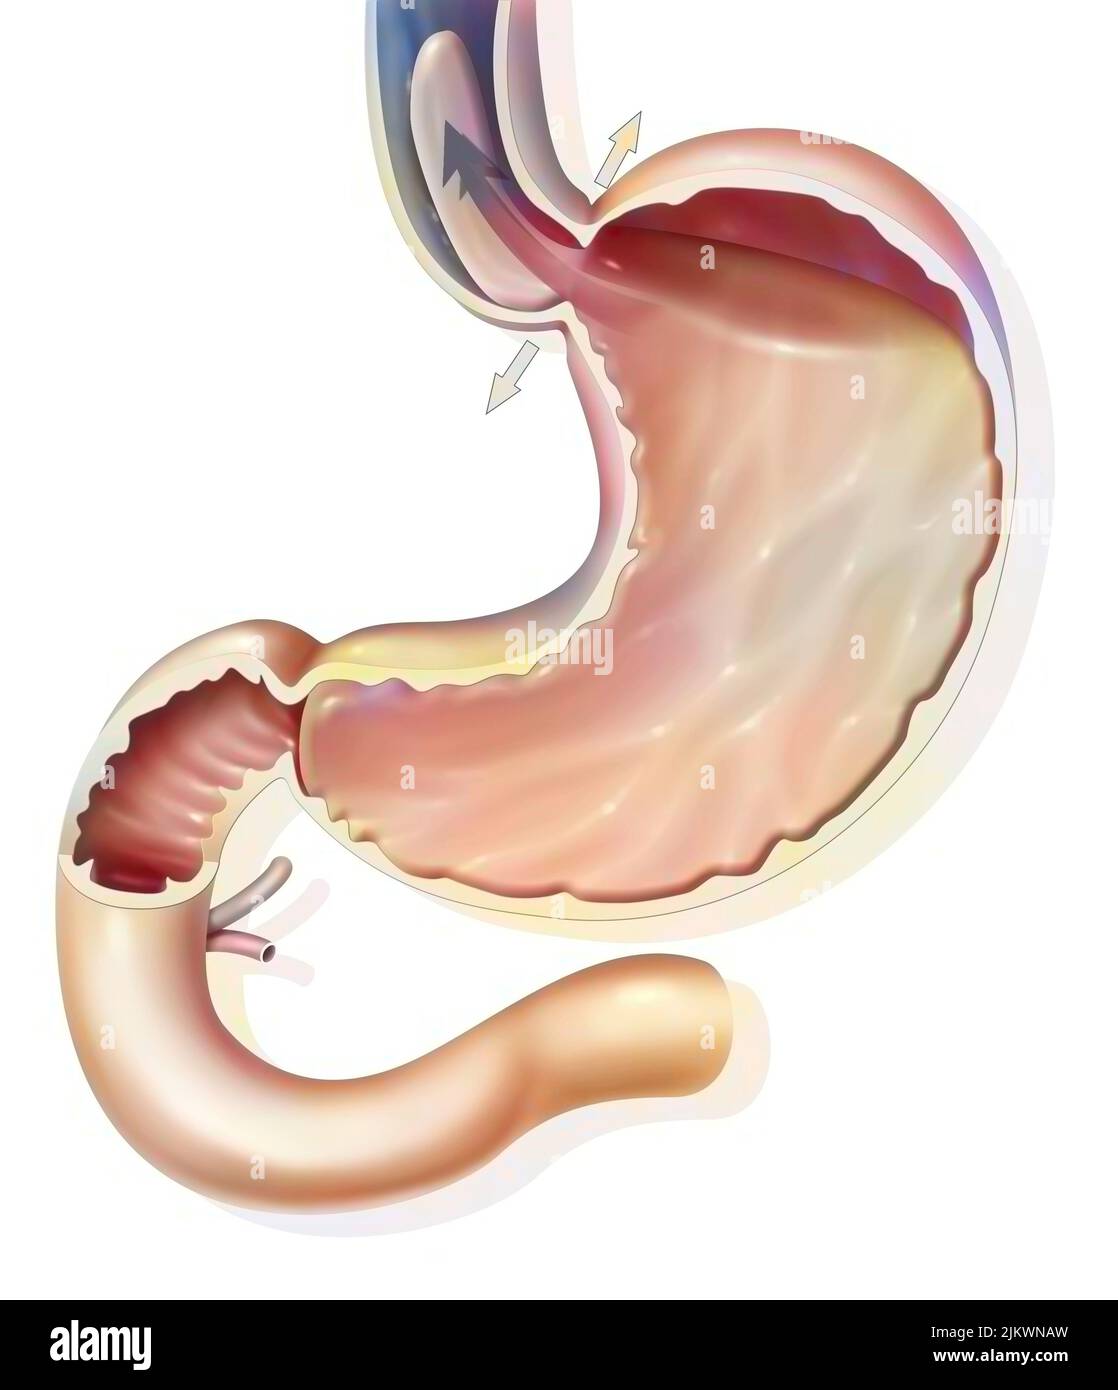 Estómago: Enfermedad de reflujo gastroesofágico en el esfínter gastroesofágico. Foto de stock